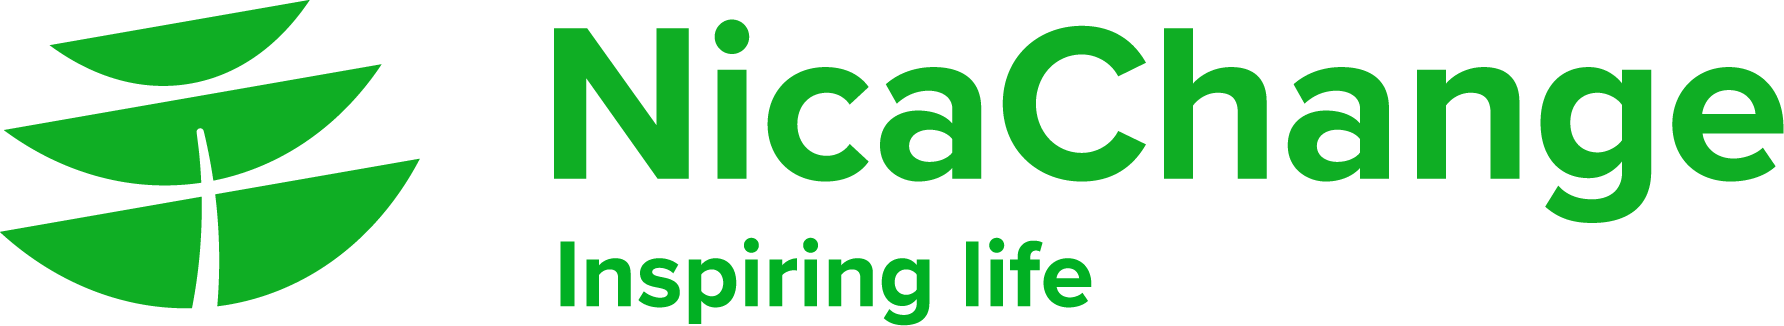 logo nicachange